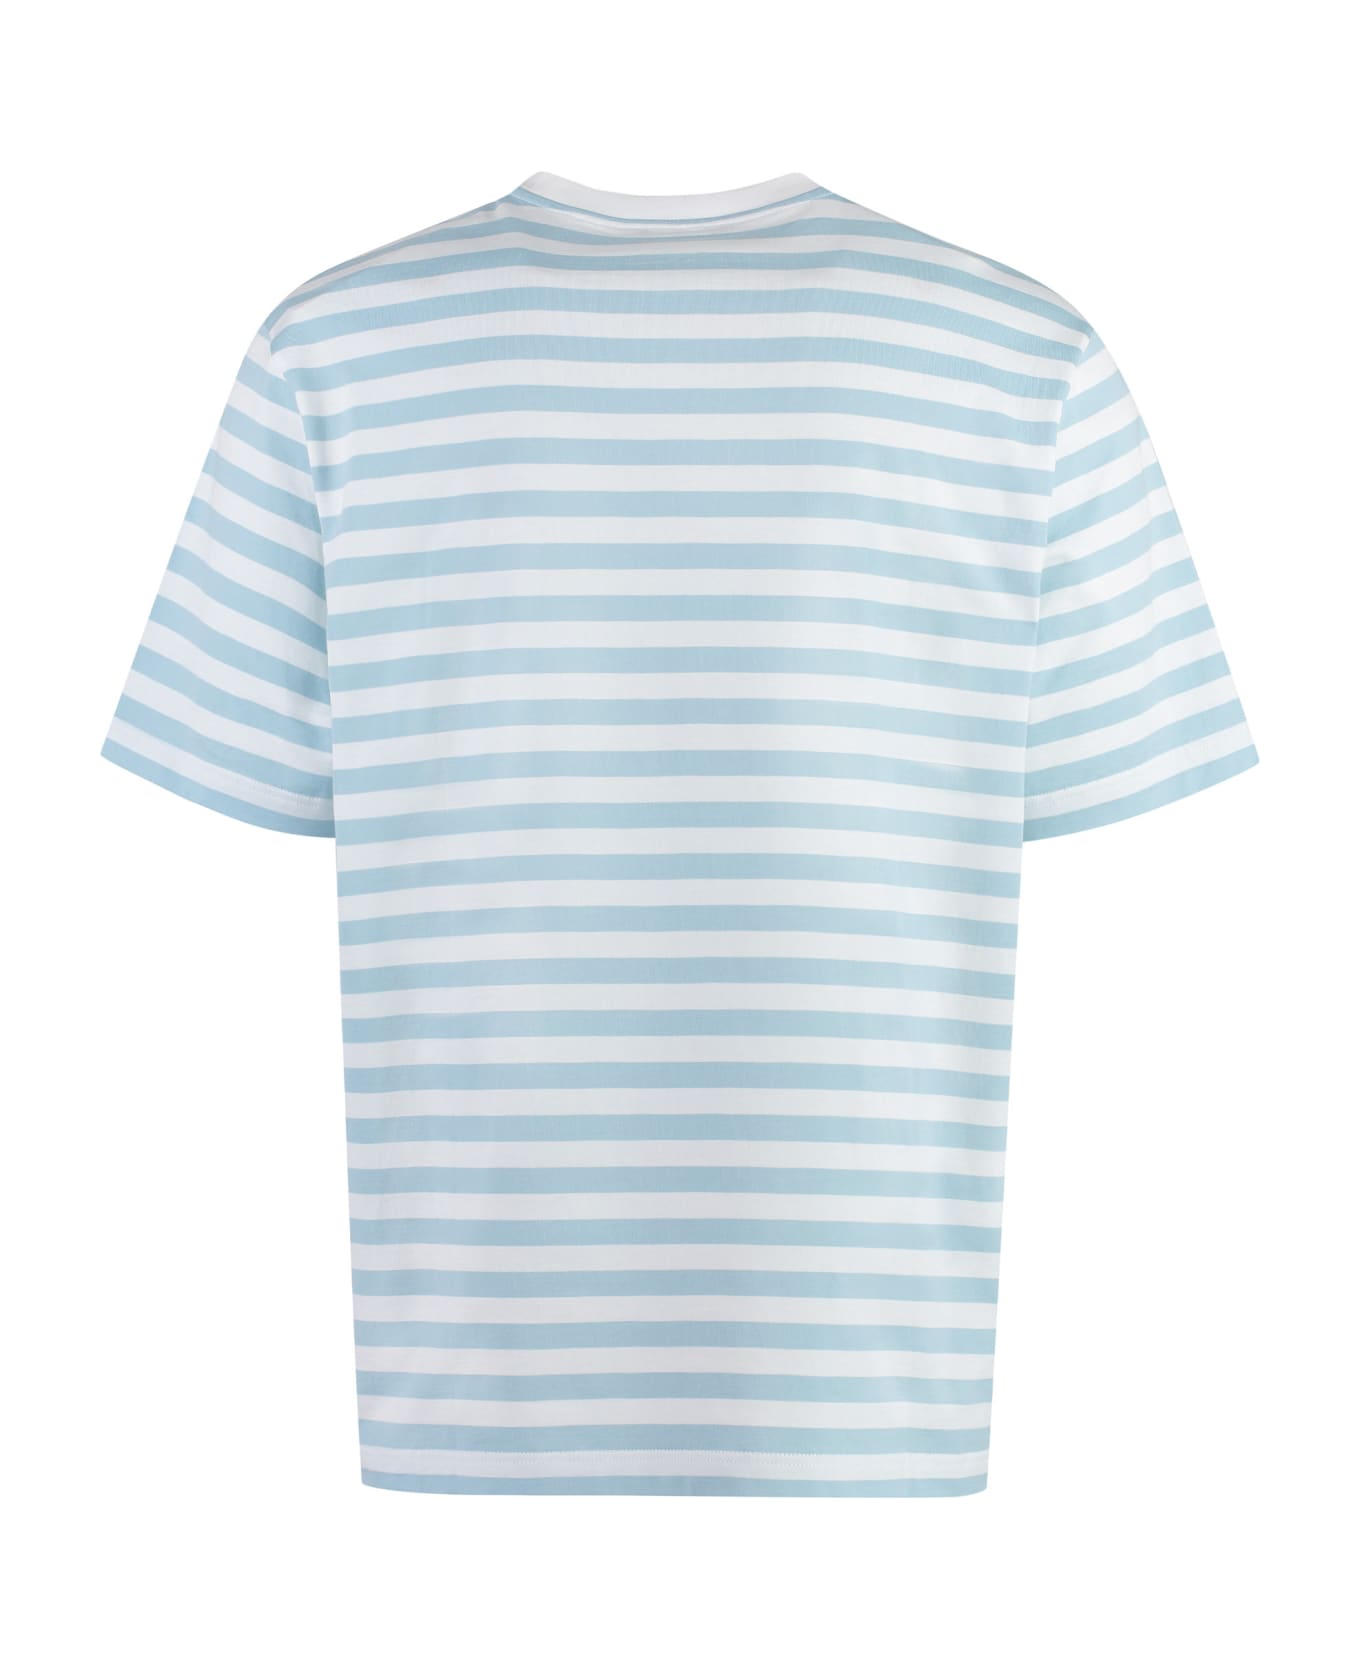 Versace Striped Cotton T-shirt - Light Blue